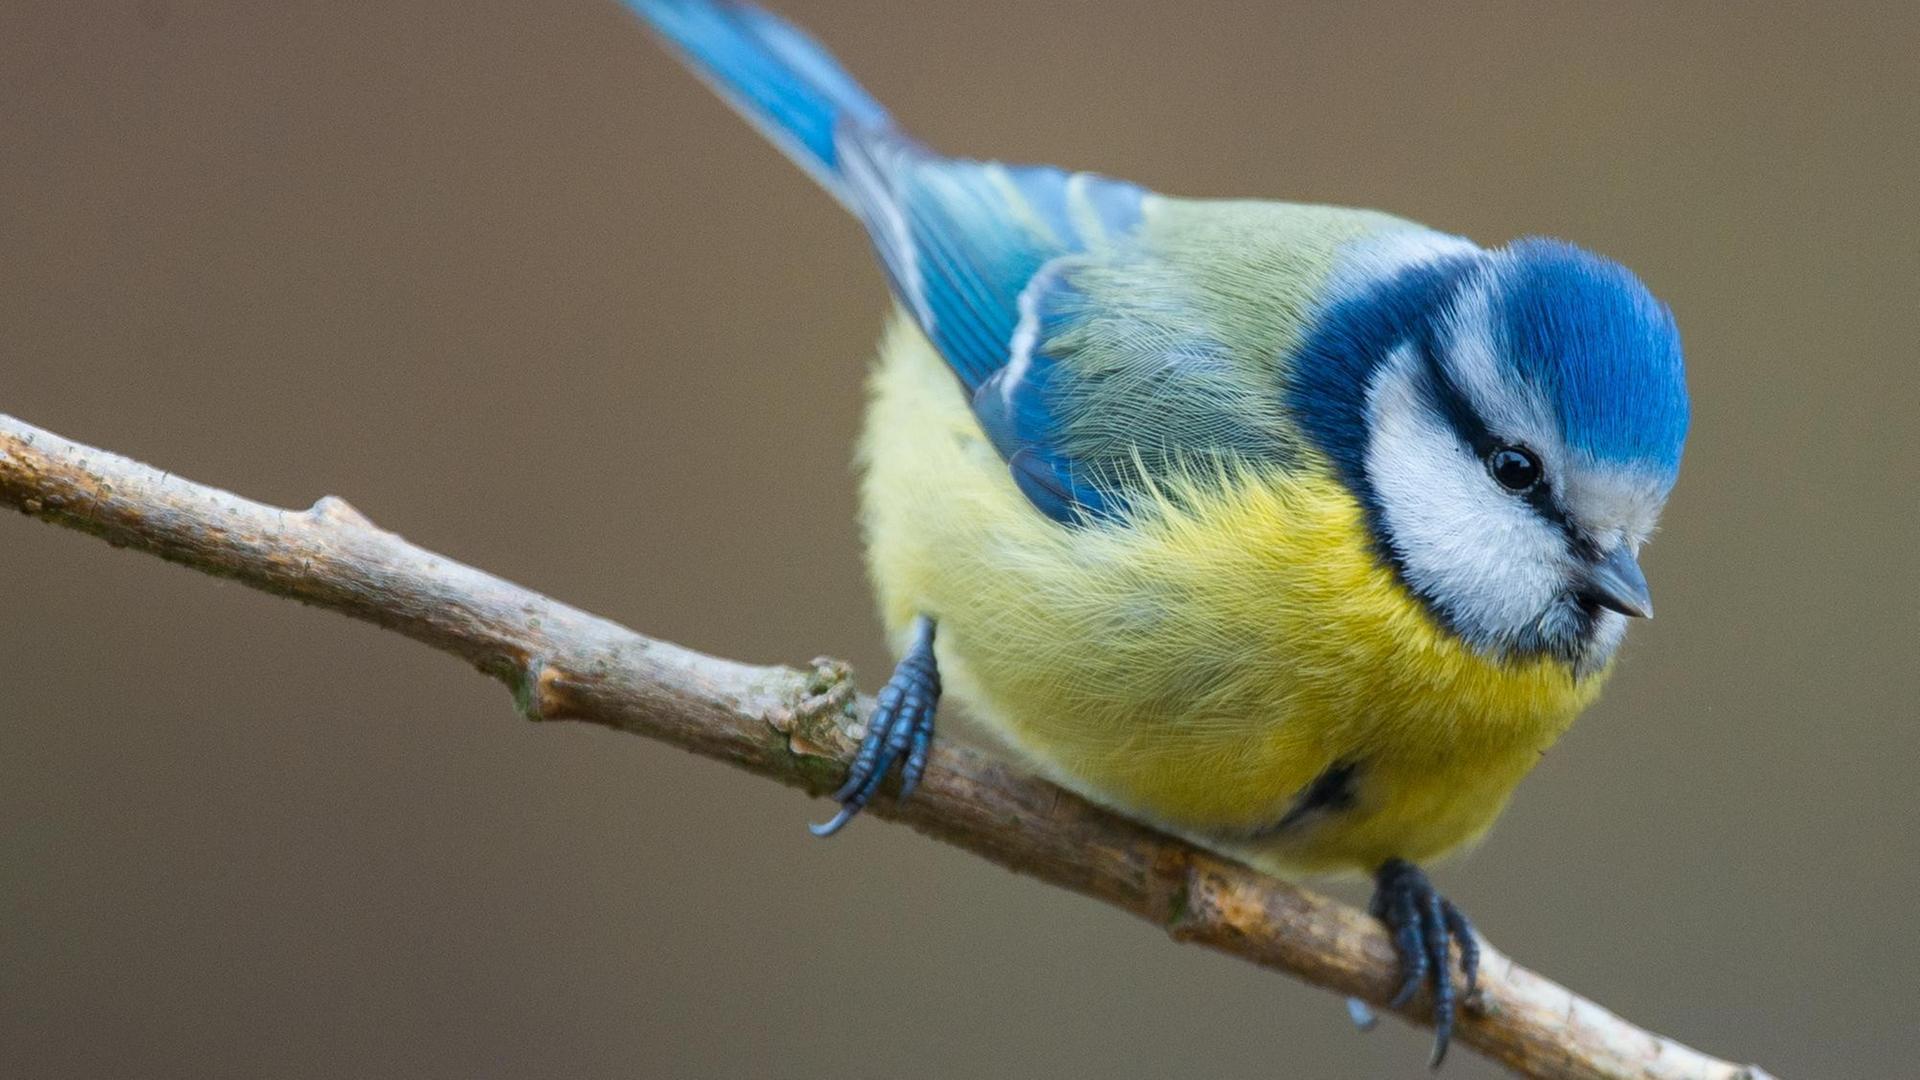 Eine Blaumeise (Cyanistes caeruleus) in einem Garten in Sieversdorf (Brandenburg). Vom 8. bis 10. Januar 2016 findet zum sechsten Mal die bundesweite "Stunde der Wintervögel" statt, zu der der Naturschutzbund Deutschland (NABU) aufgerufen hat.